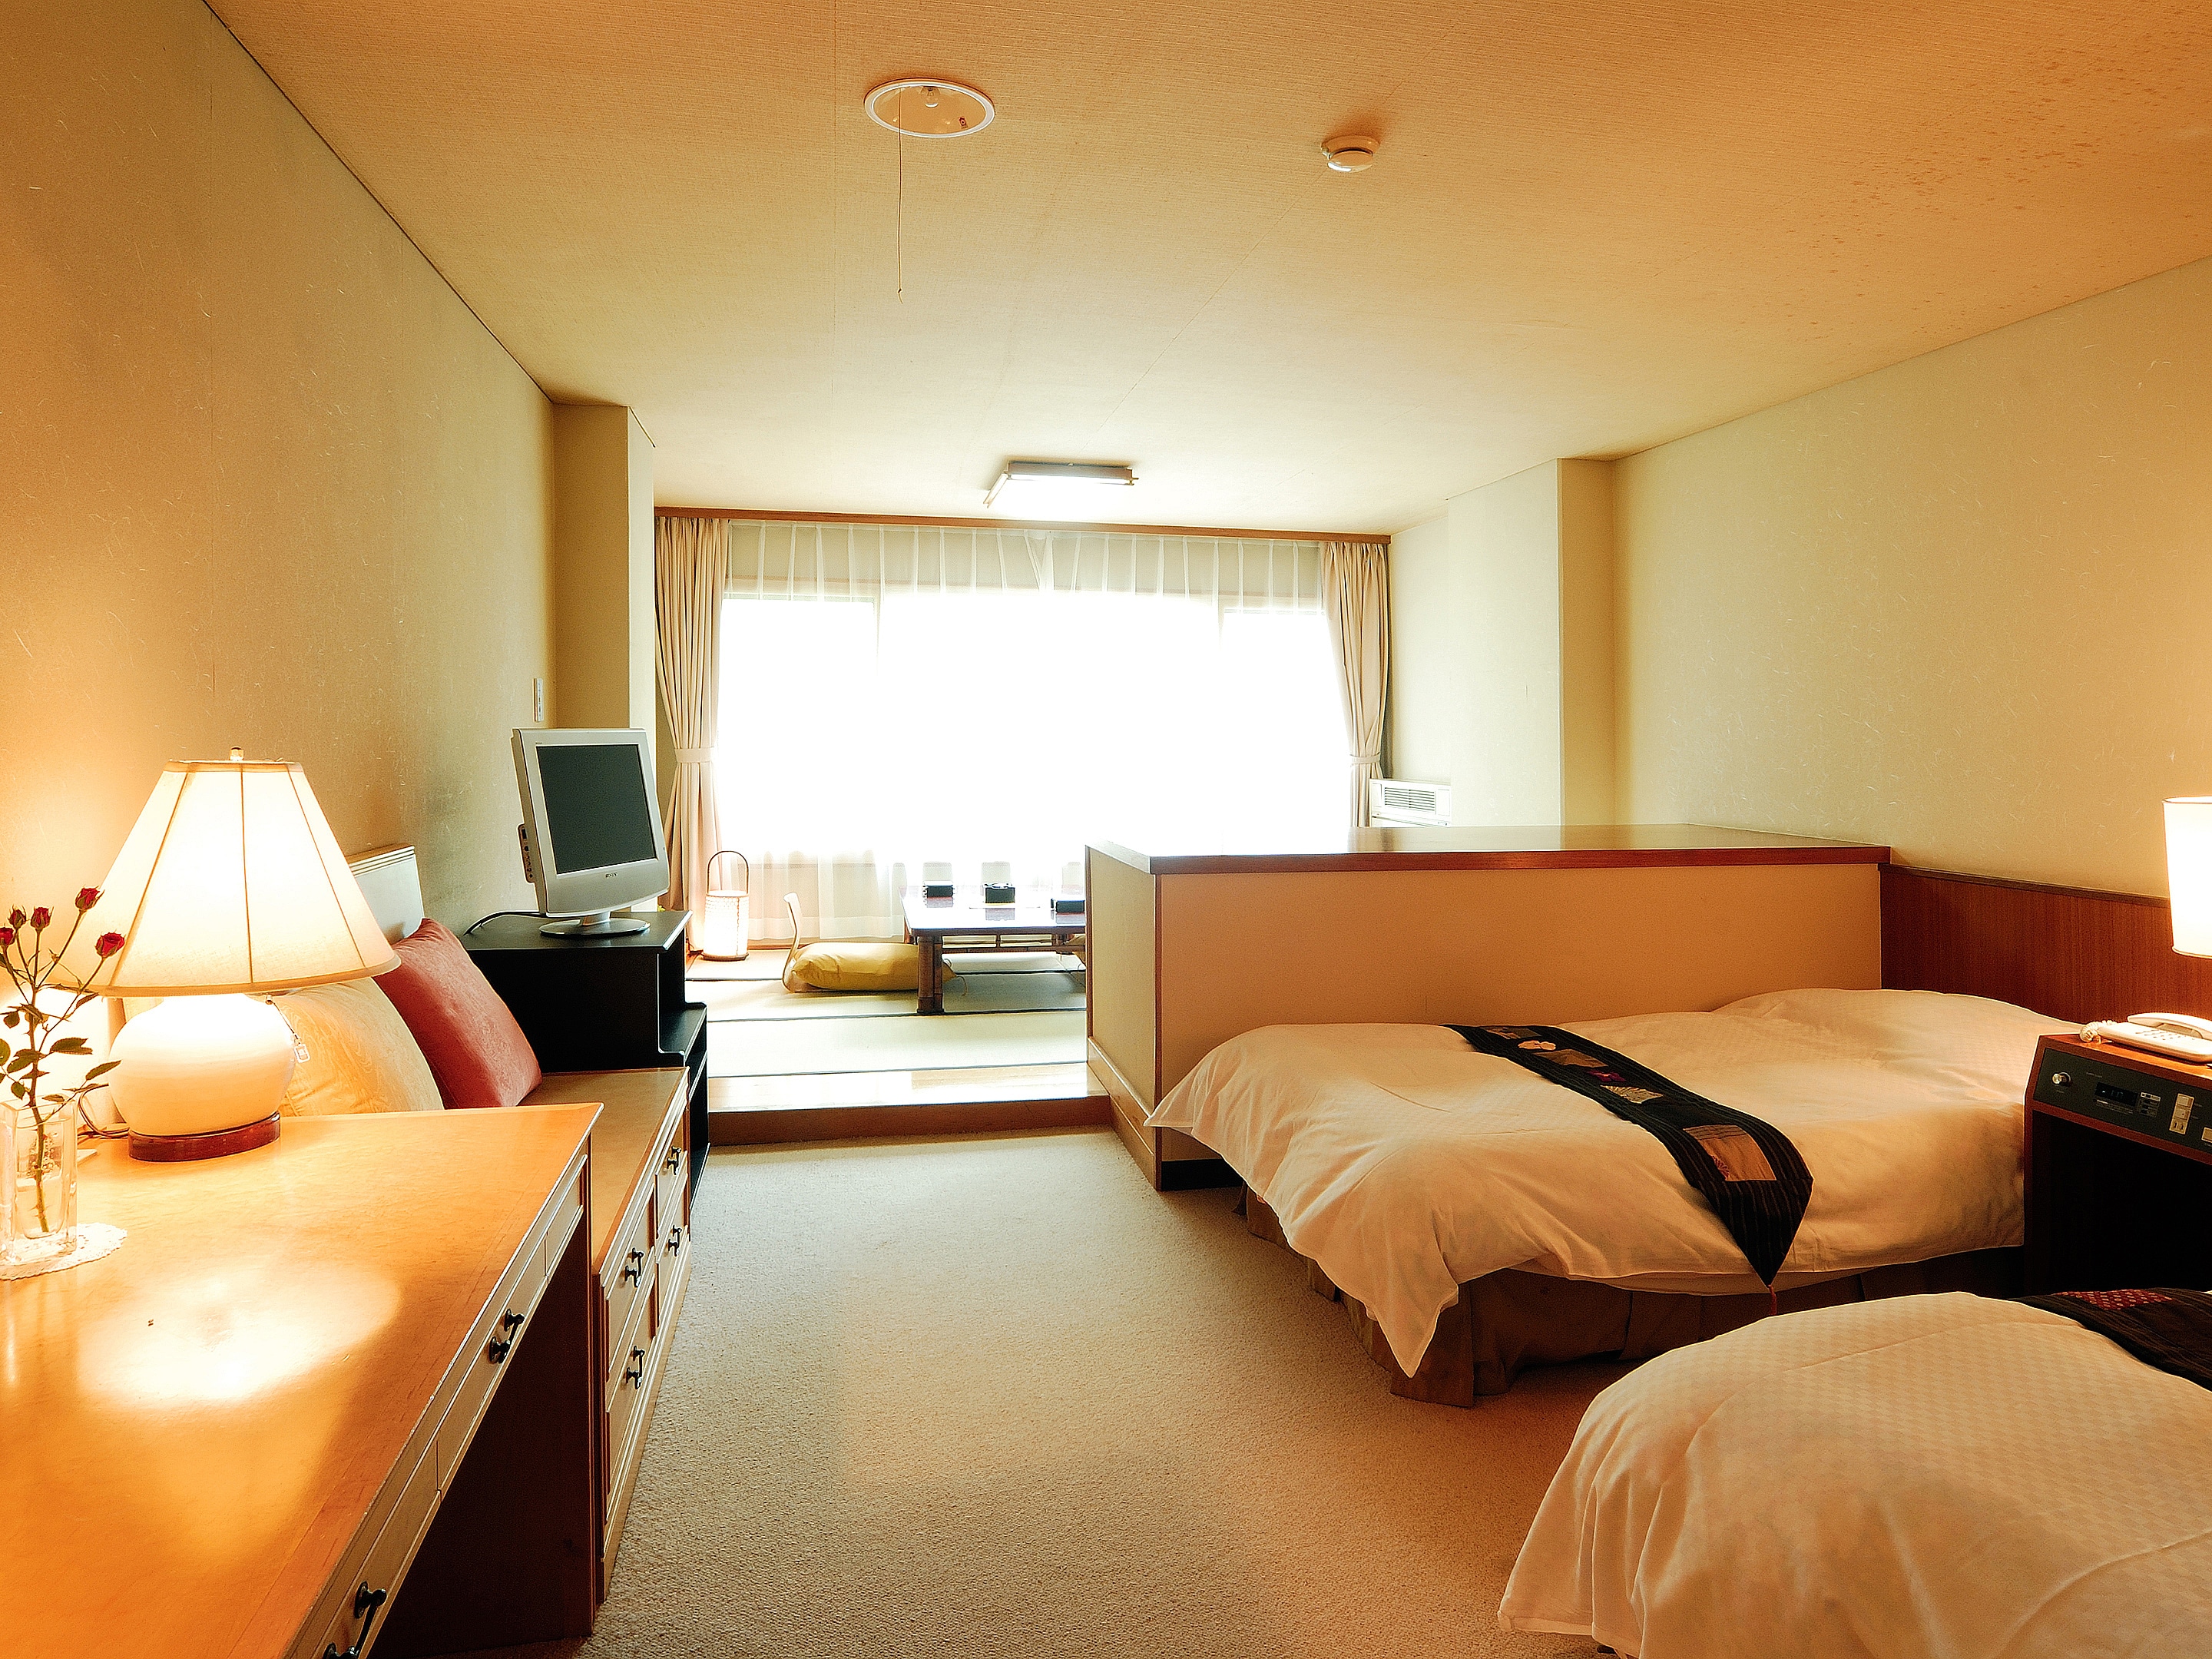 일반 객실 35㎡ 일본식 객실 6조 + 트윈 침대